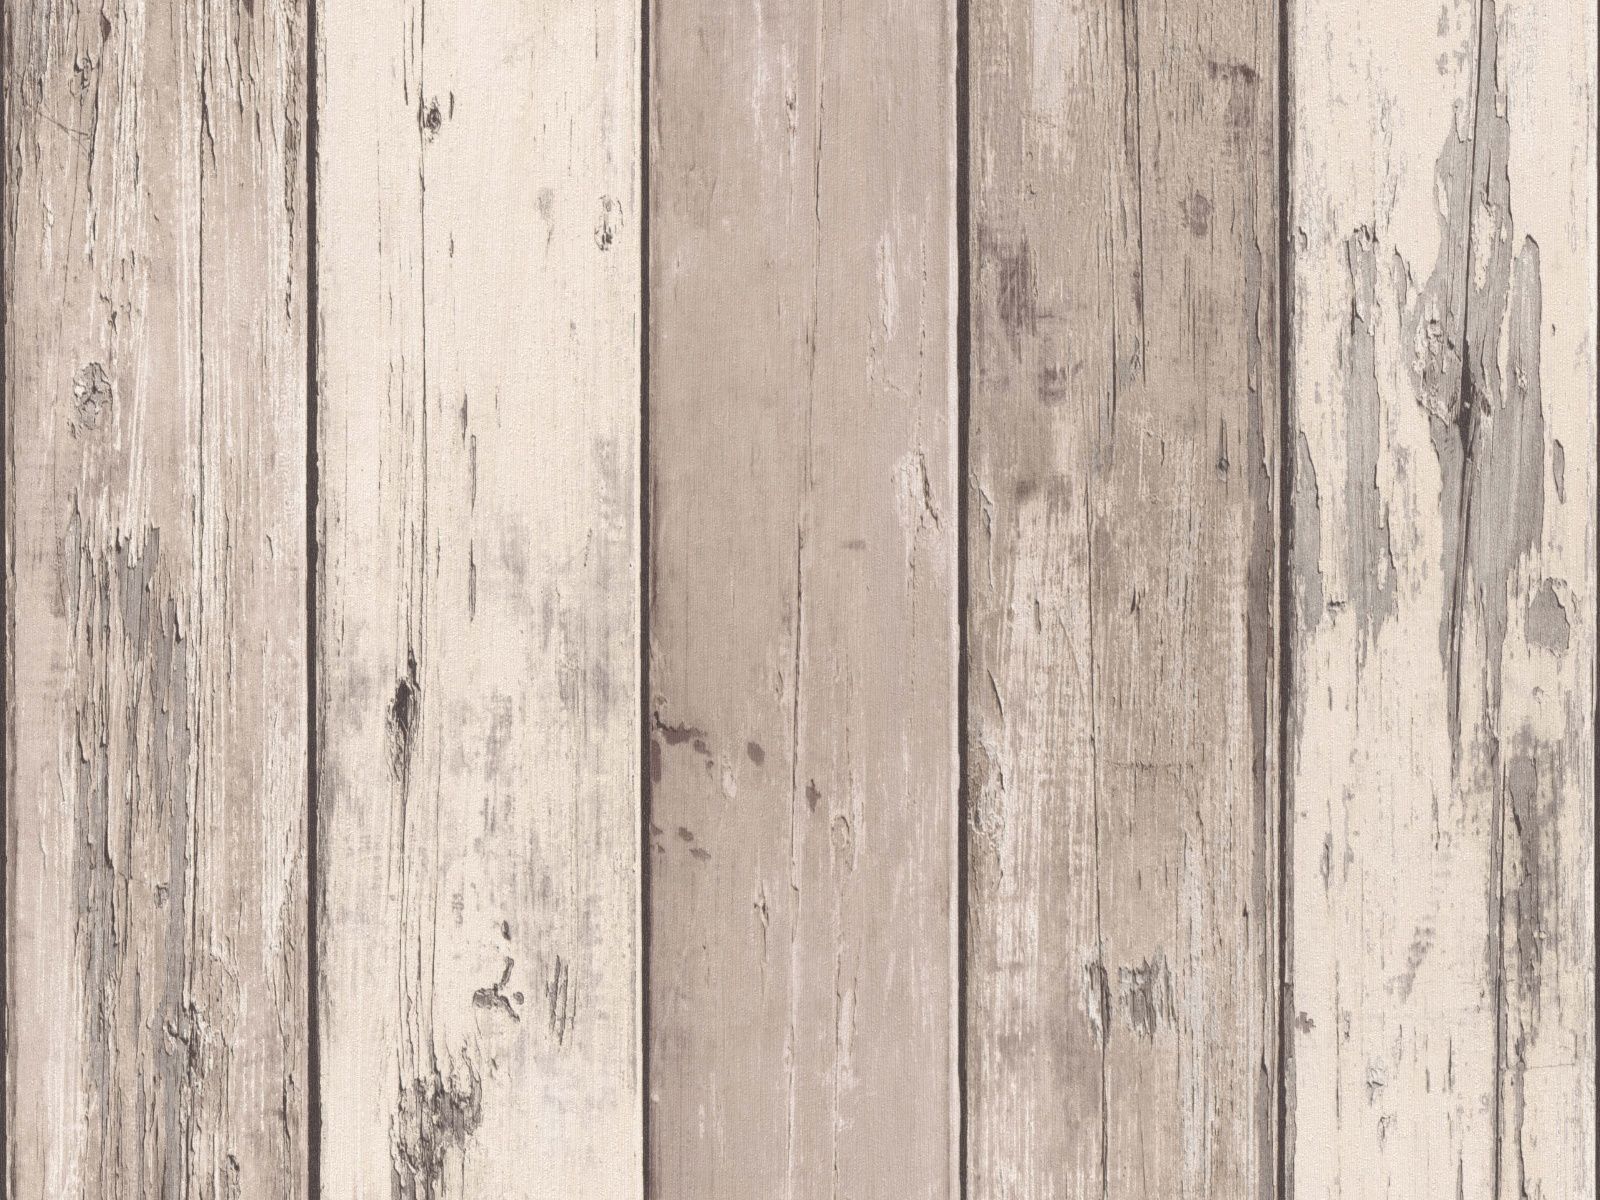 Vliesová tapeta s dizajnom drevených starých dosiek s efektom morskej patiny v svetlohnedej farbe, ER-601419